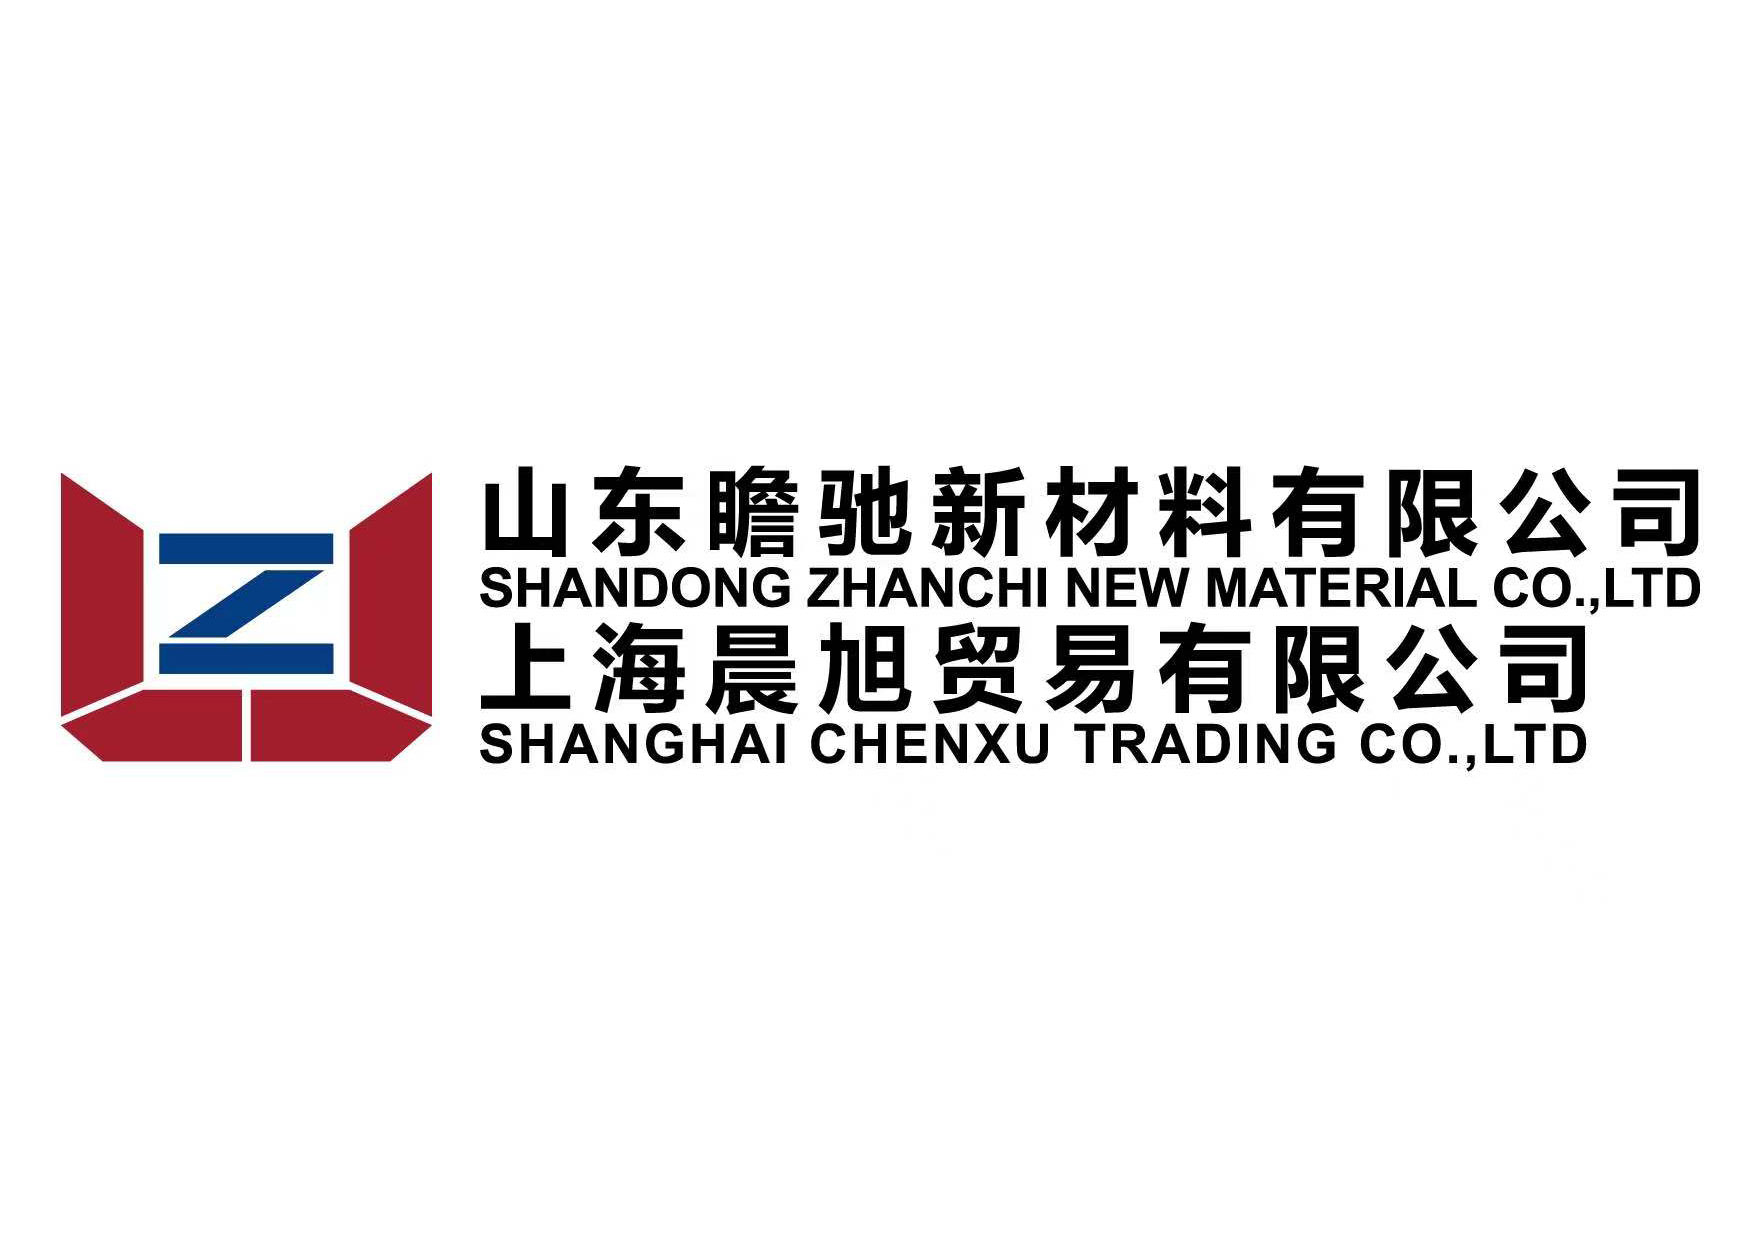 Shanghai Chenxu Trading bedriuw oprjochte